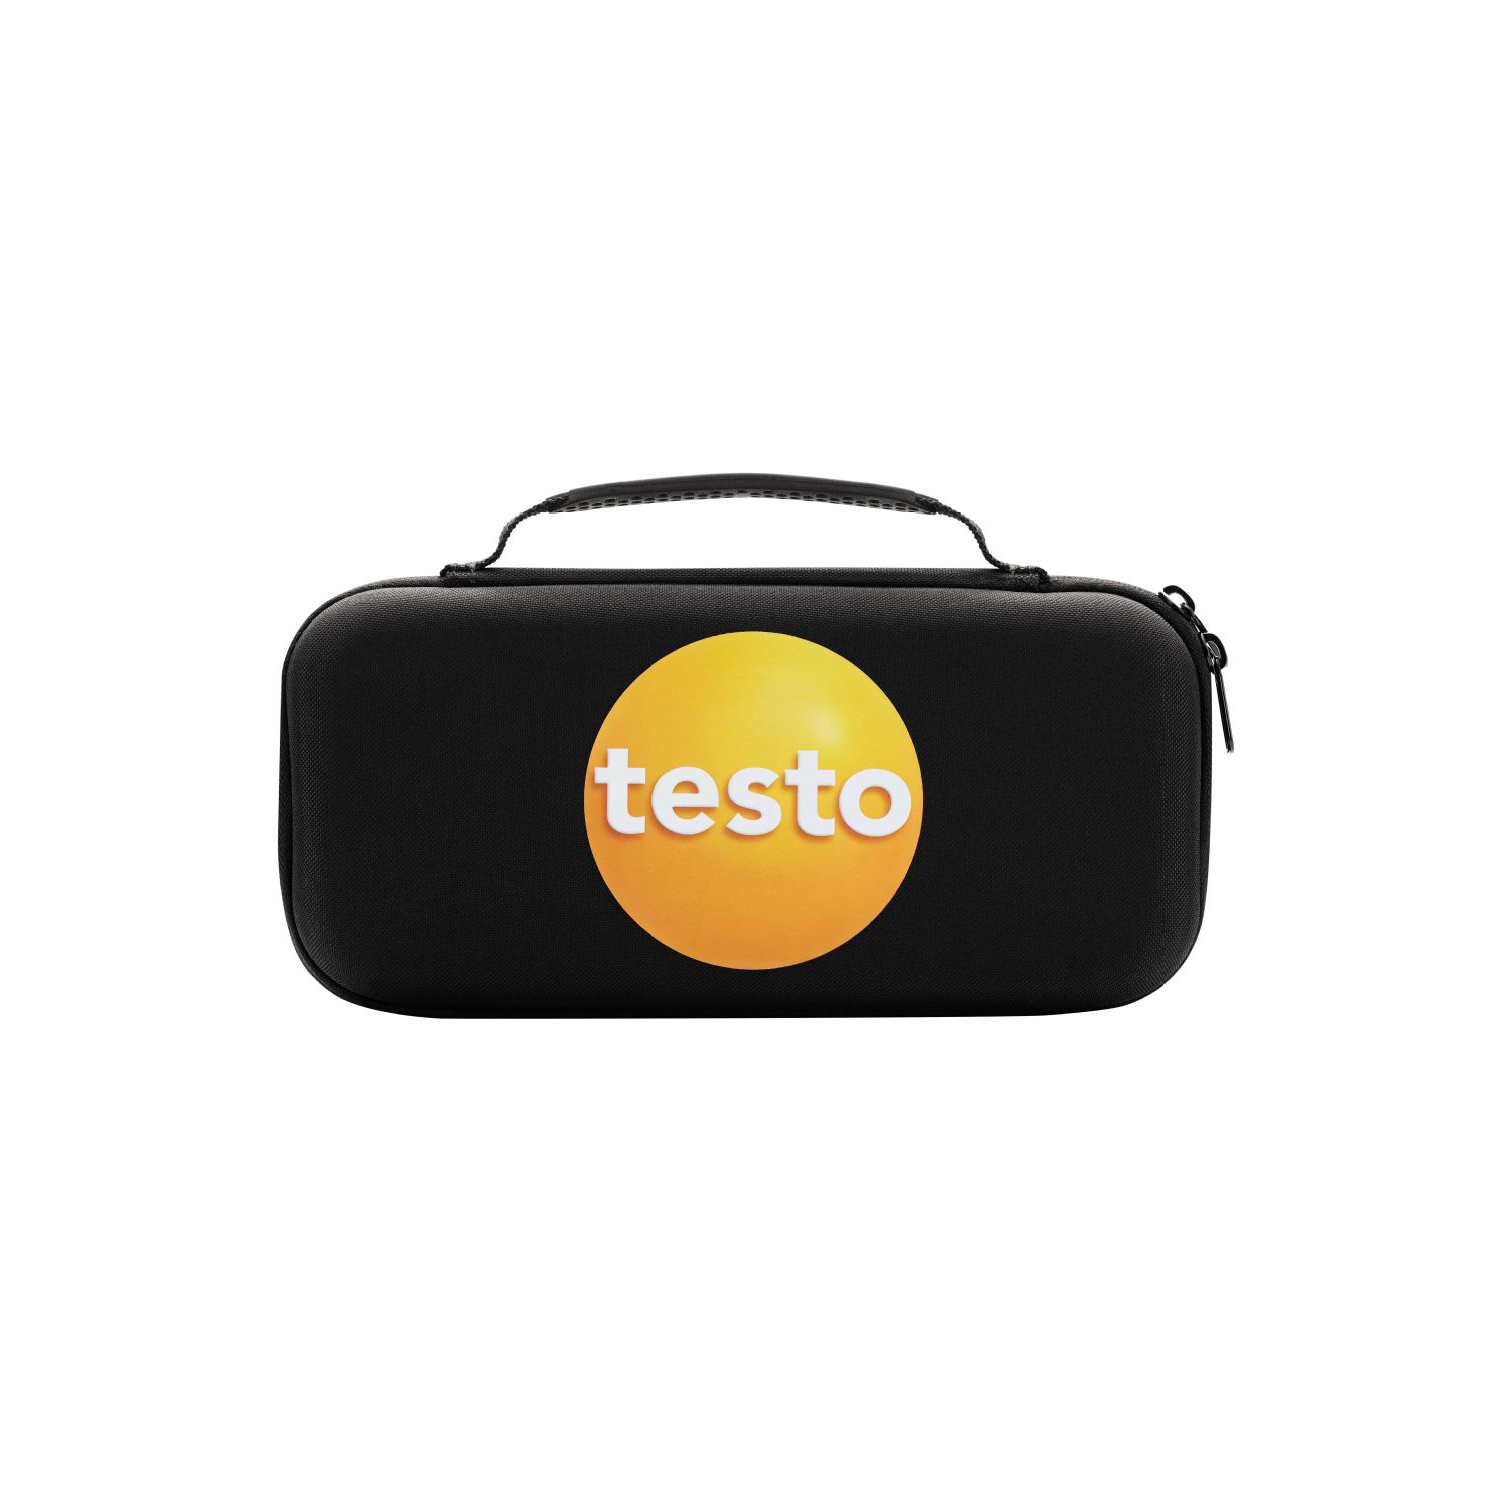 Testo Transporttasche für Testo 755 / Testo 770 - 0590 0017